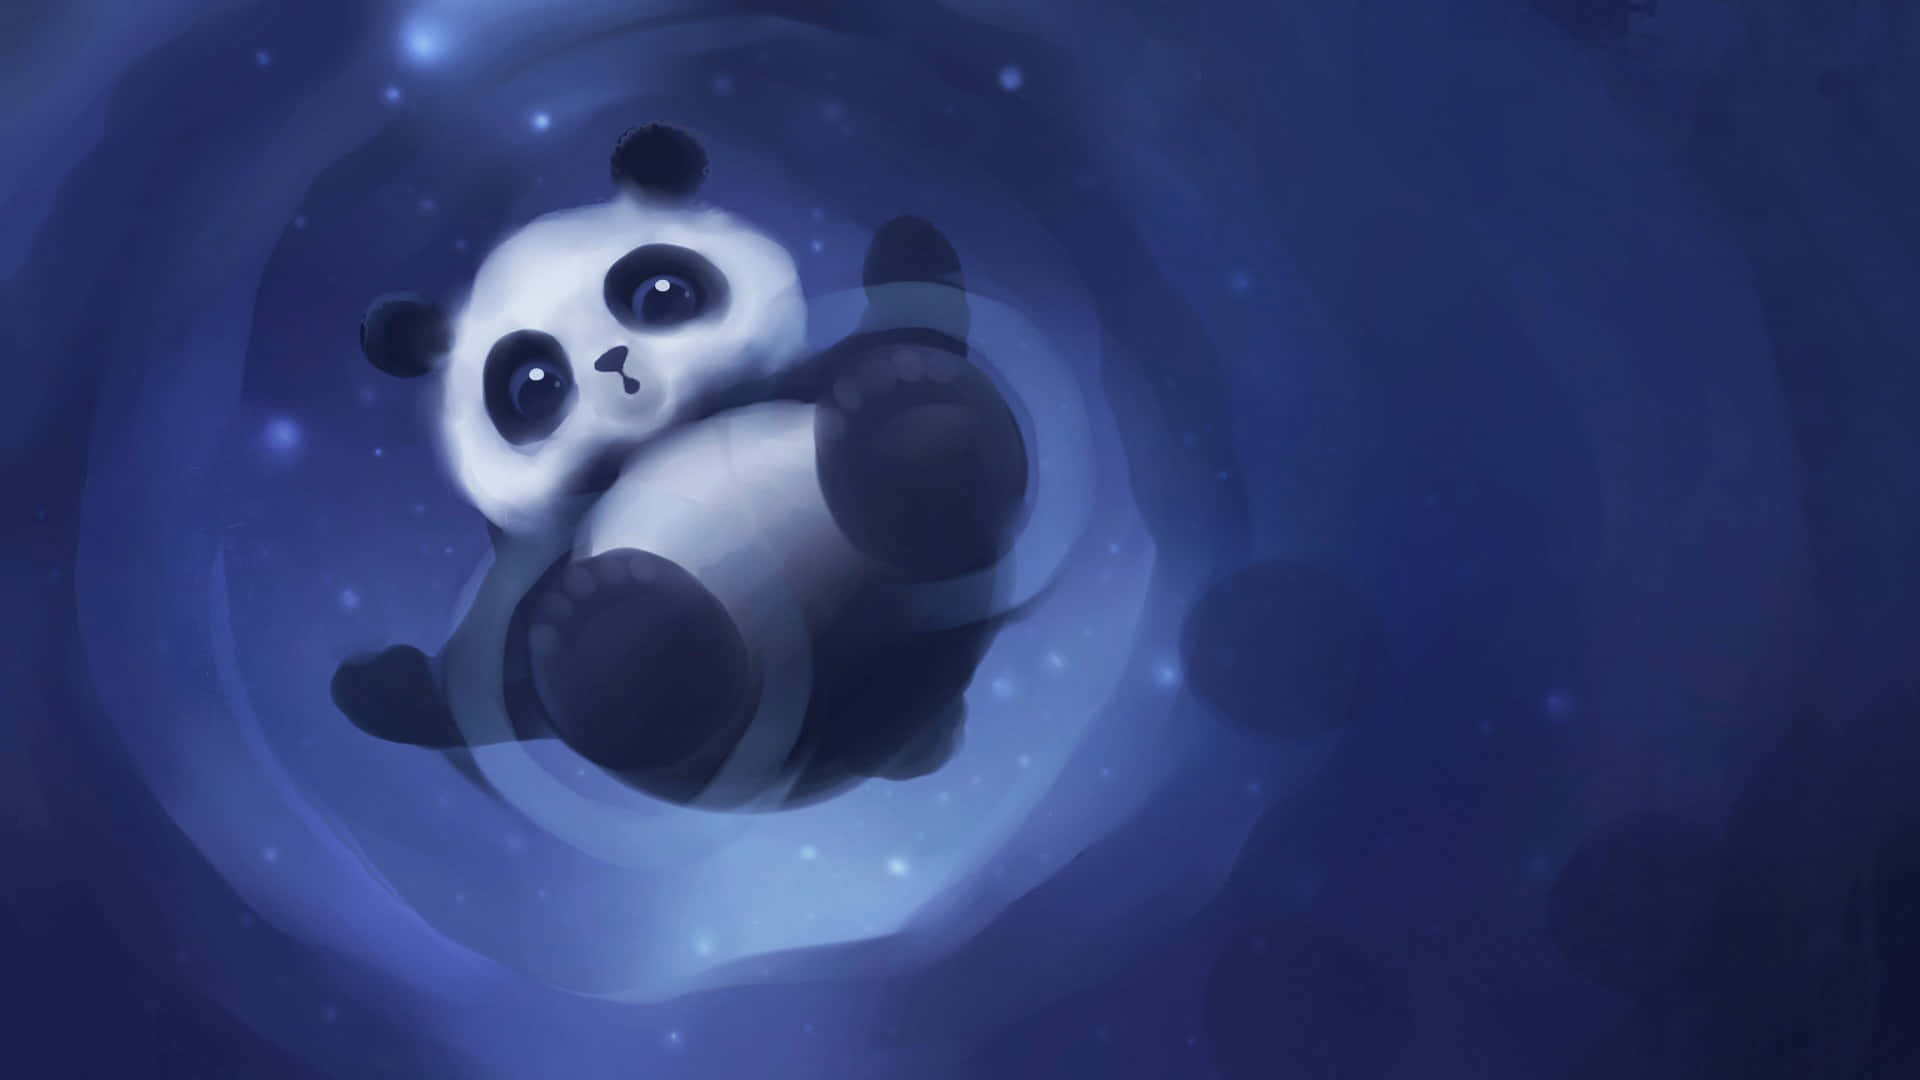 Cute Cartoon Panda Blue Swirl Wallpaper